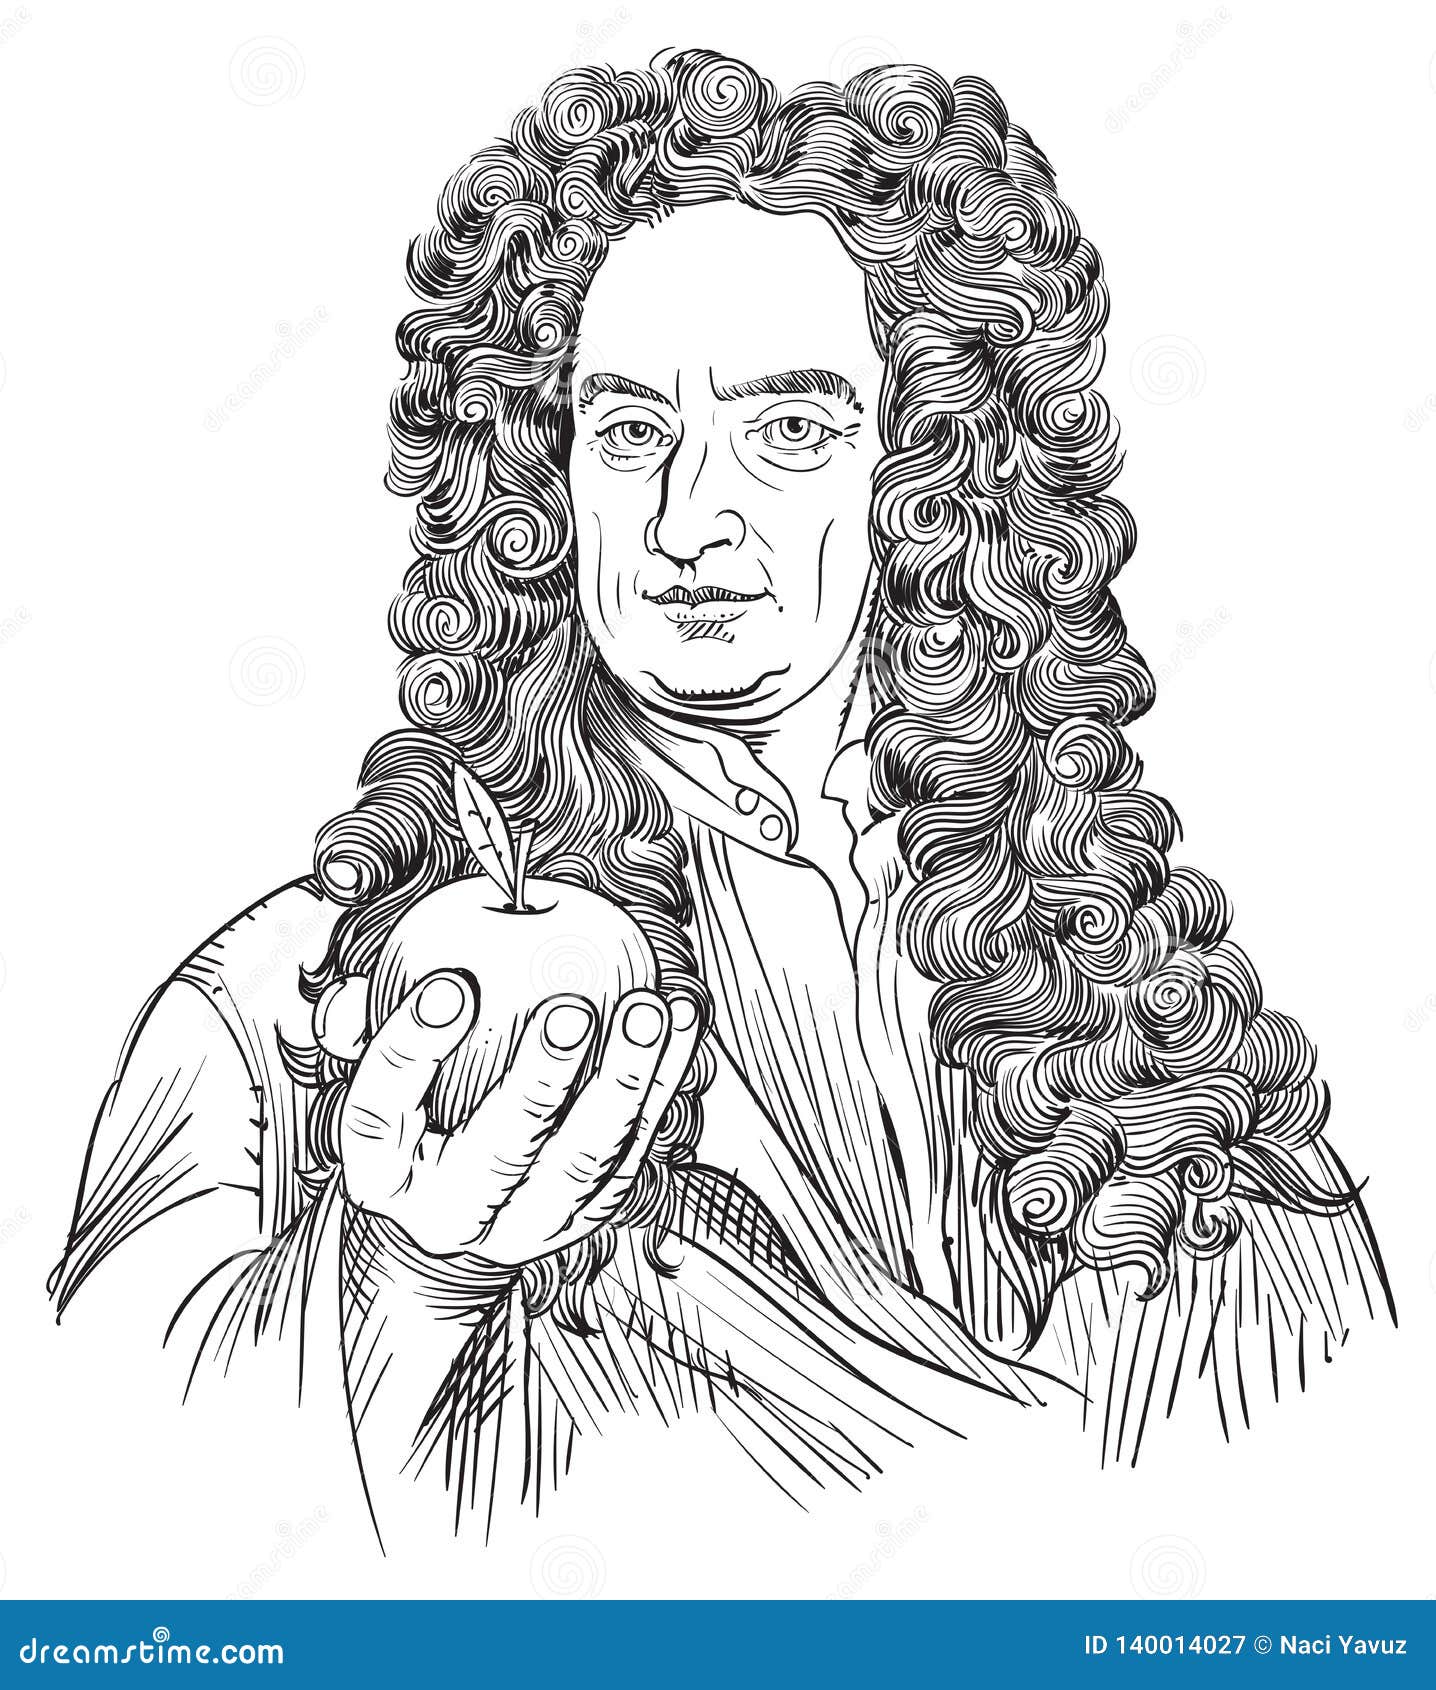 Isaac Newton Portrait in Line Art Illustration Stock Vector